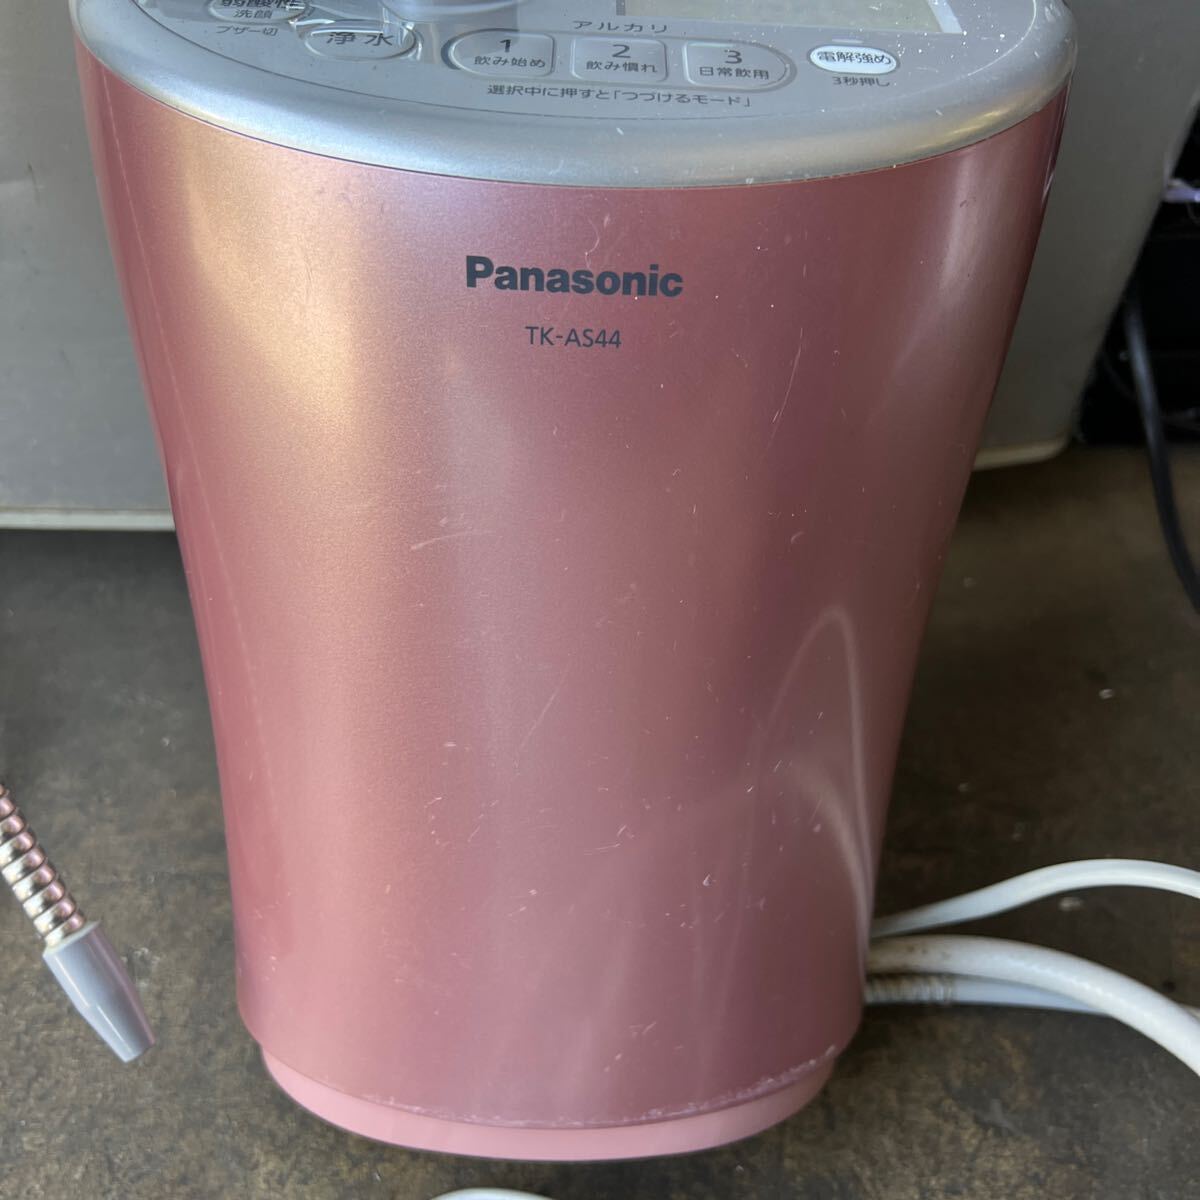 Panasonic water ionizer TK-AS44